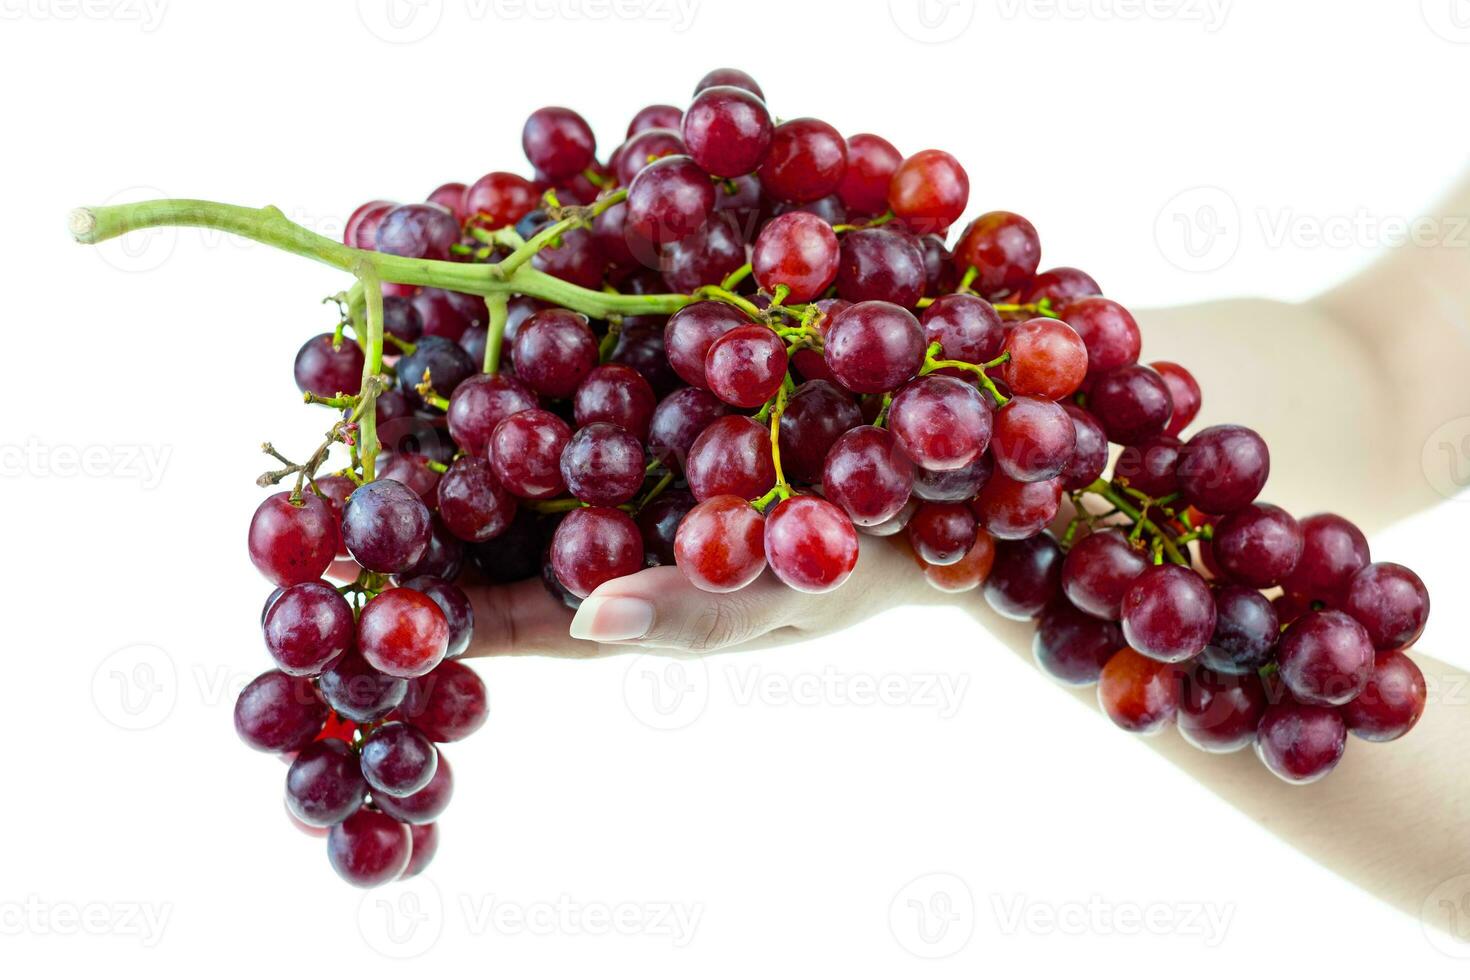 Racimo de uva roja madura en la mano de una dama sobre un fondo blanco. foto